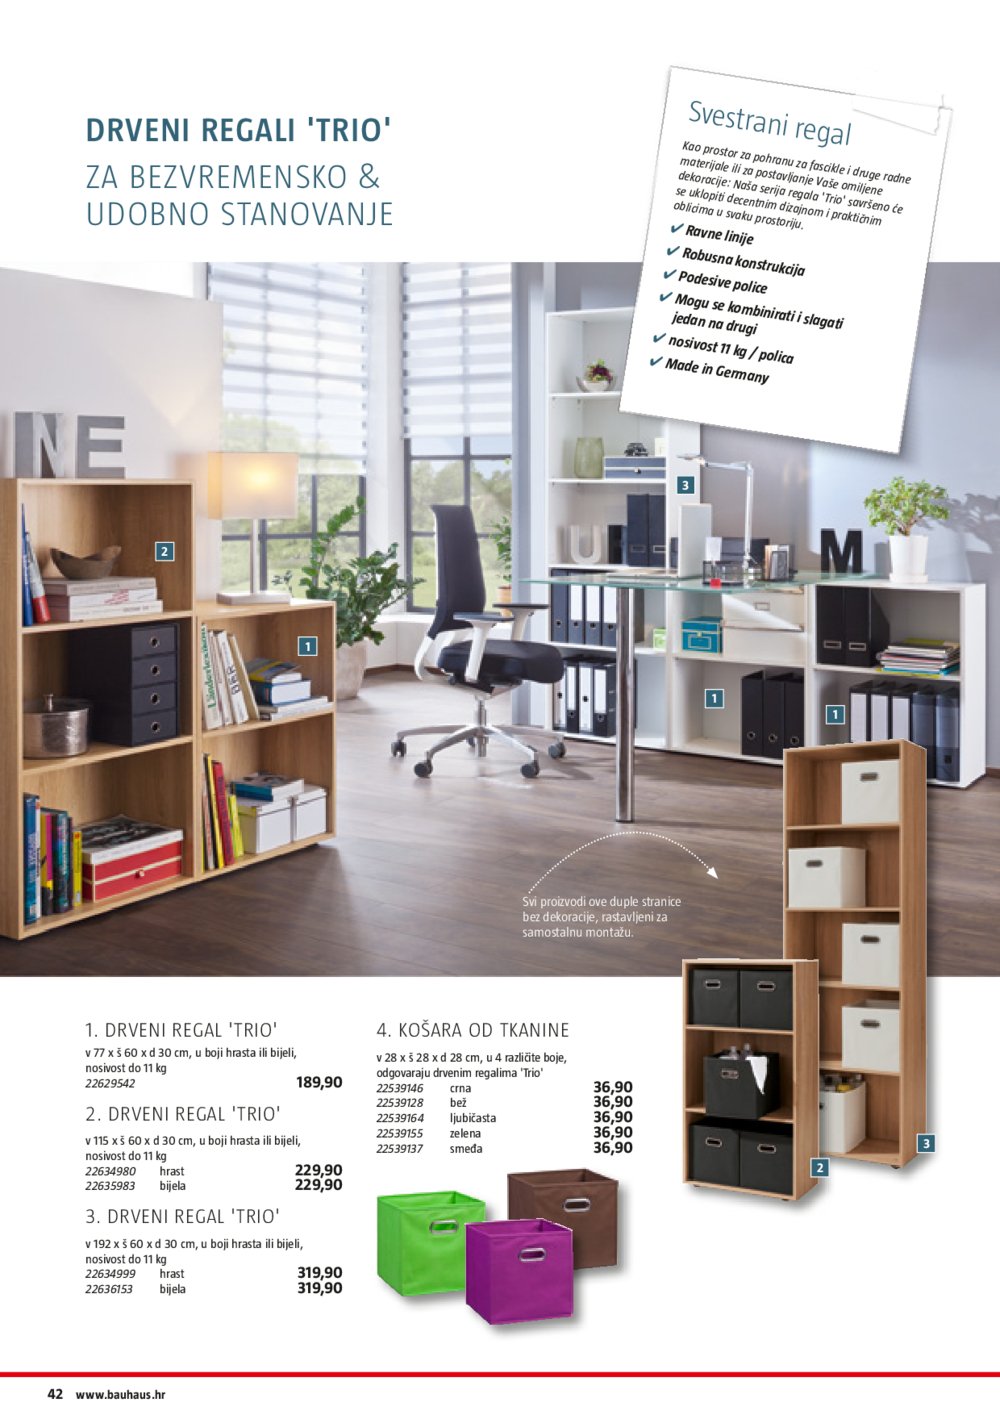 Bauhaus katalog za uređenje doma,ureda i radionice 08.07.-31.12.2019.